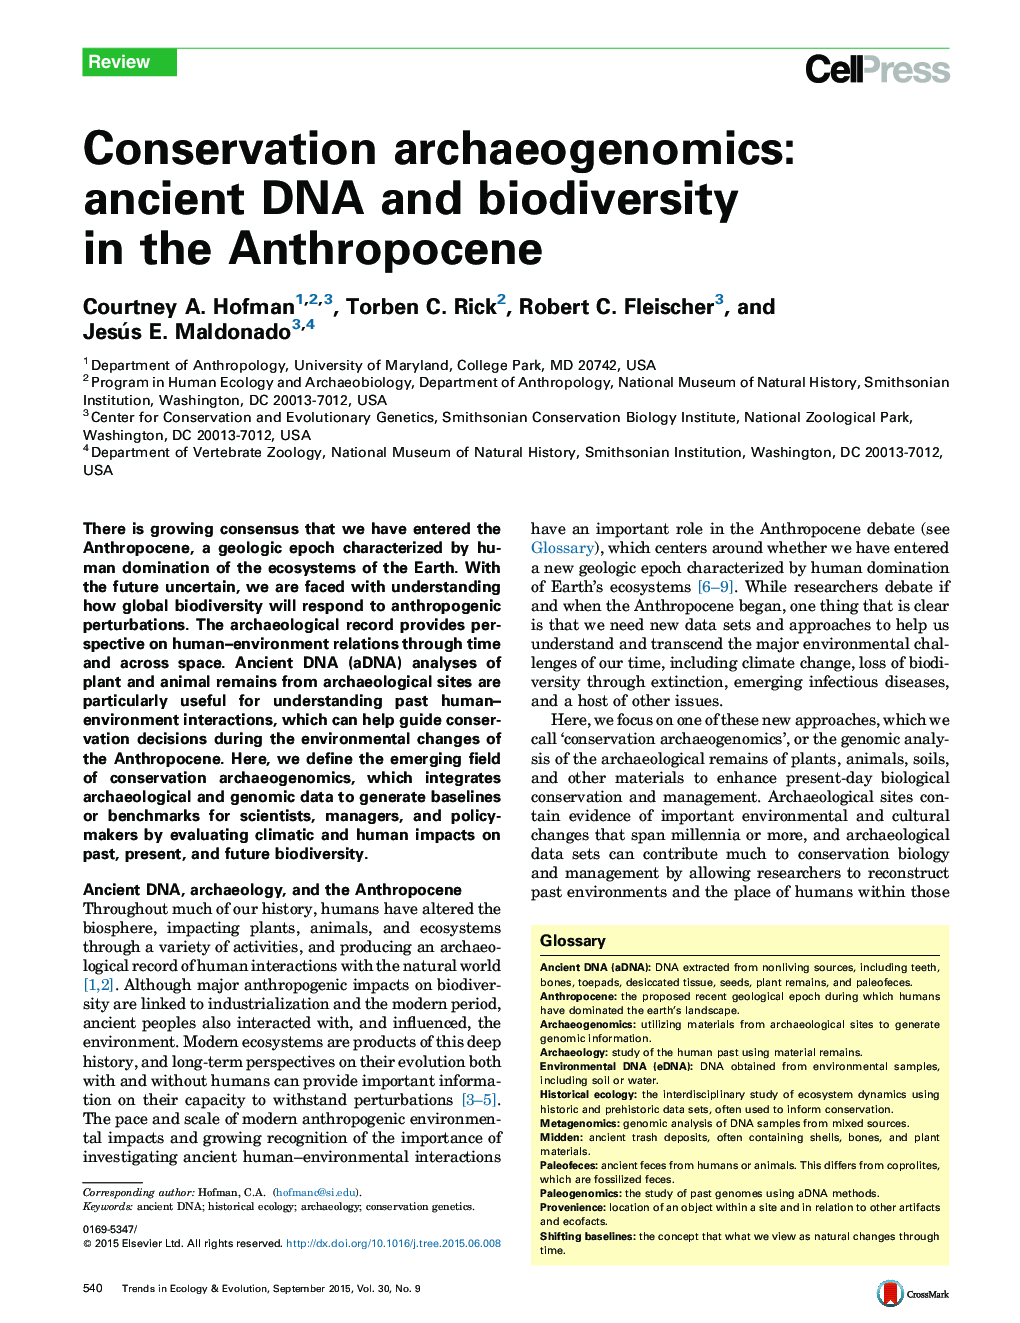 حفاظت ژنتیک بدست آمده باستانی: DNA باستانی و تنوع زیستی در آنتروپوسین